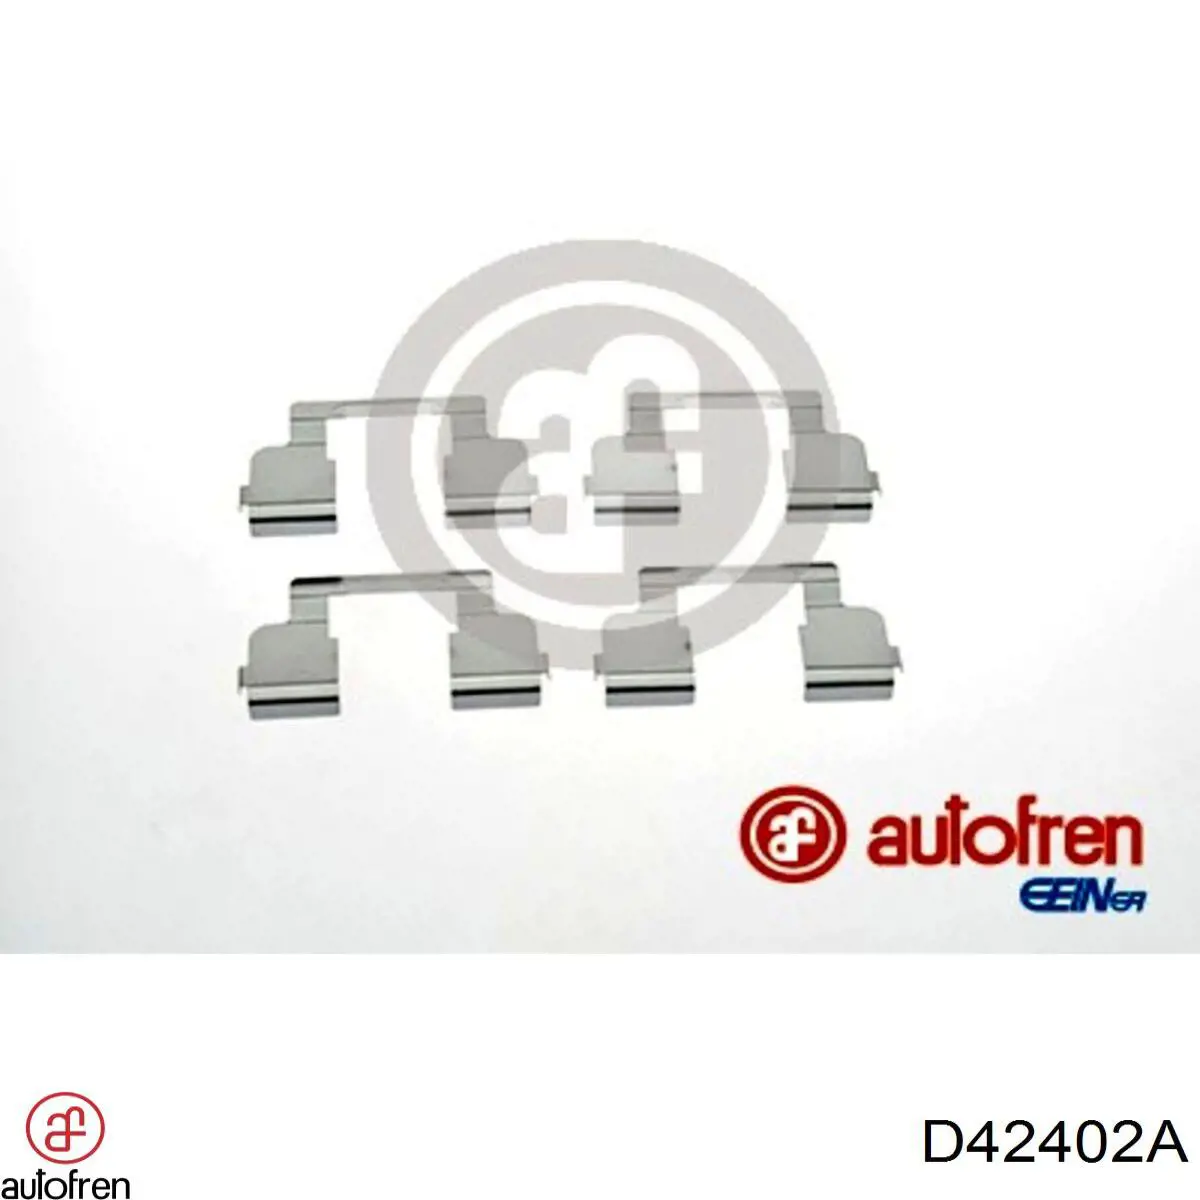 D42402A Autofren conjunto de muelles almohadilla discos delanteros